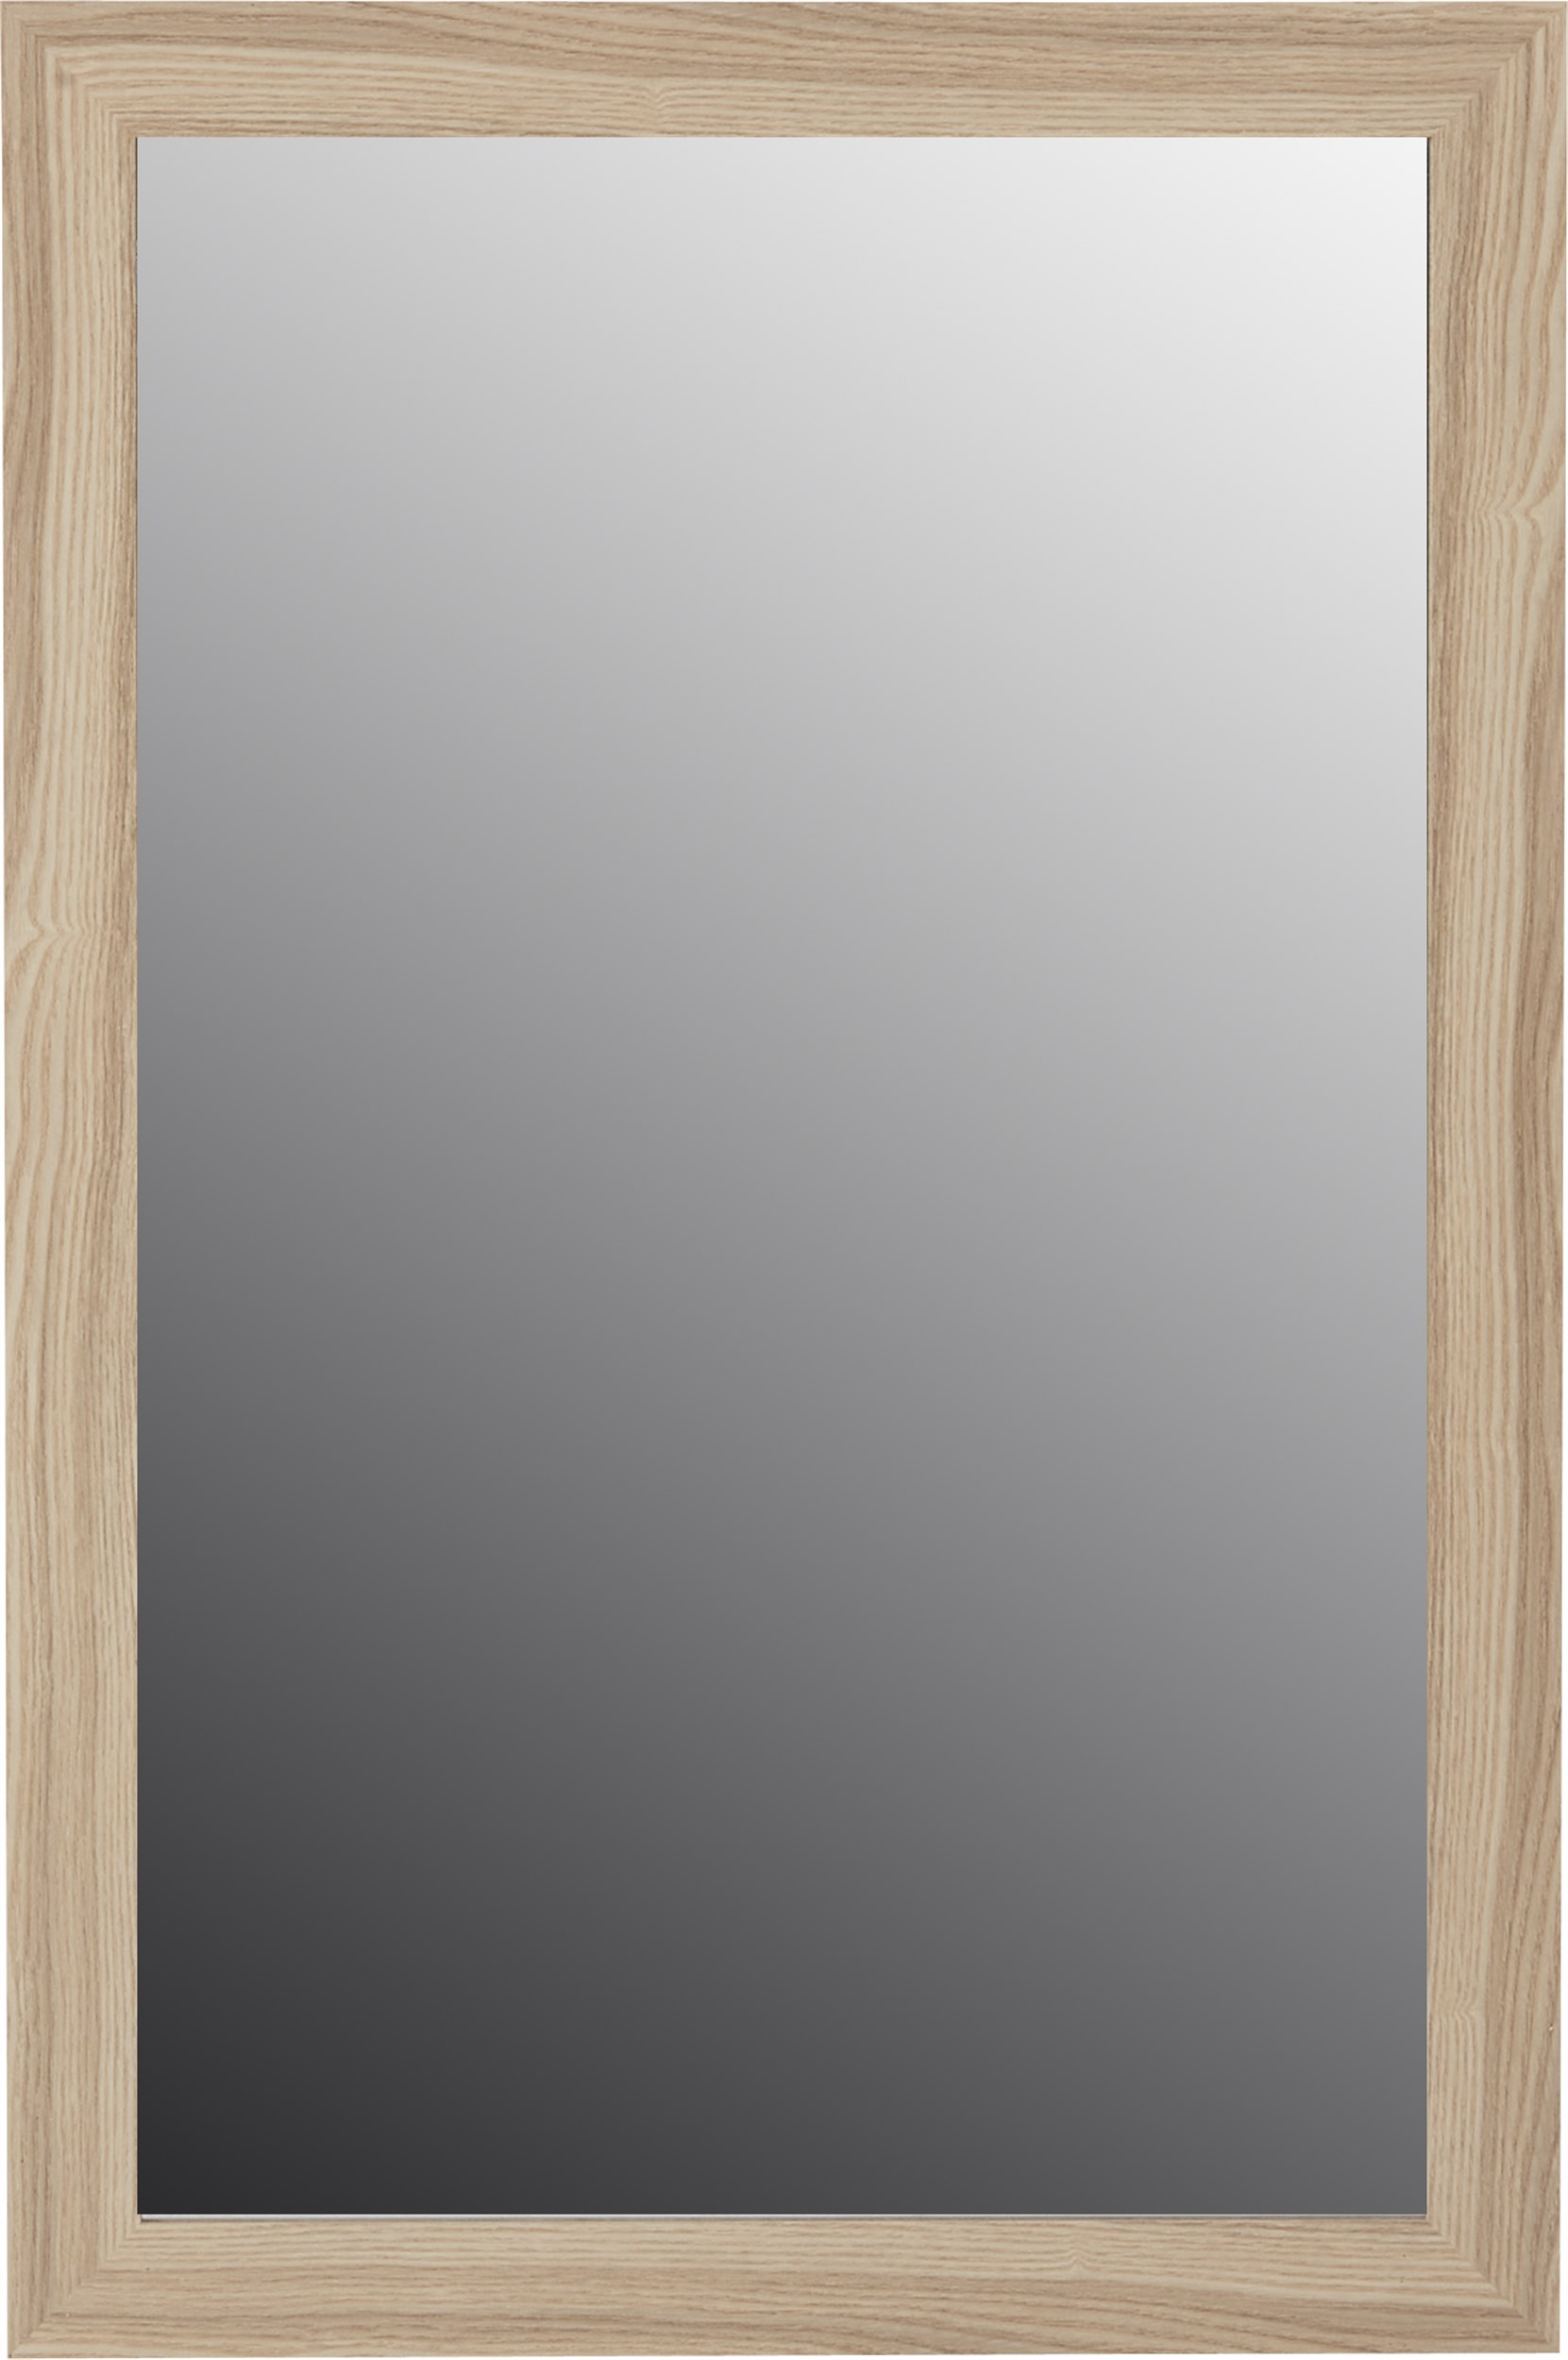 UDGÅET. Adeline spegel 58 x 88 cm - Ram i ekträ